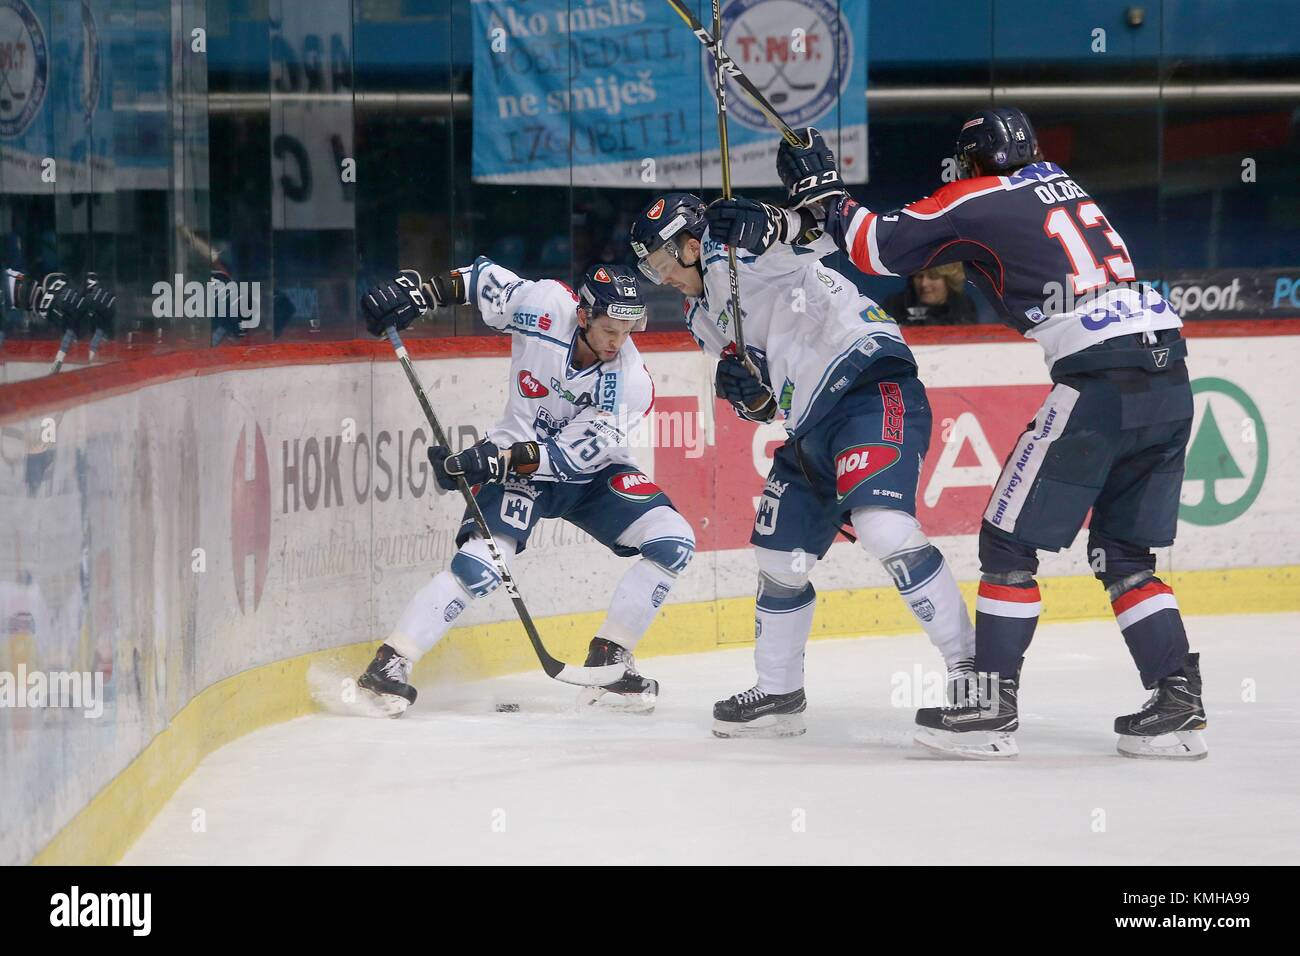 Zagreb, Croatie. Dec 12, 2017. Sondre Olden (R) de la KHL Medvescak rivalise avec Jeff Lovecchio (L) et Juha Uotila de Fehervar19 AV lors de la ronde 26 d'Ebel League match de hockey sur glace entre KHL Medvescak et Fehervar19 AV à Zagreb, Croatie, le 12 décembre 2017. AV Fehervar19 a gagné 3-2. Credit : Dalibor Urukalovic/Xinhua/Alamy Live News Banque D'Images